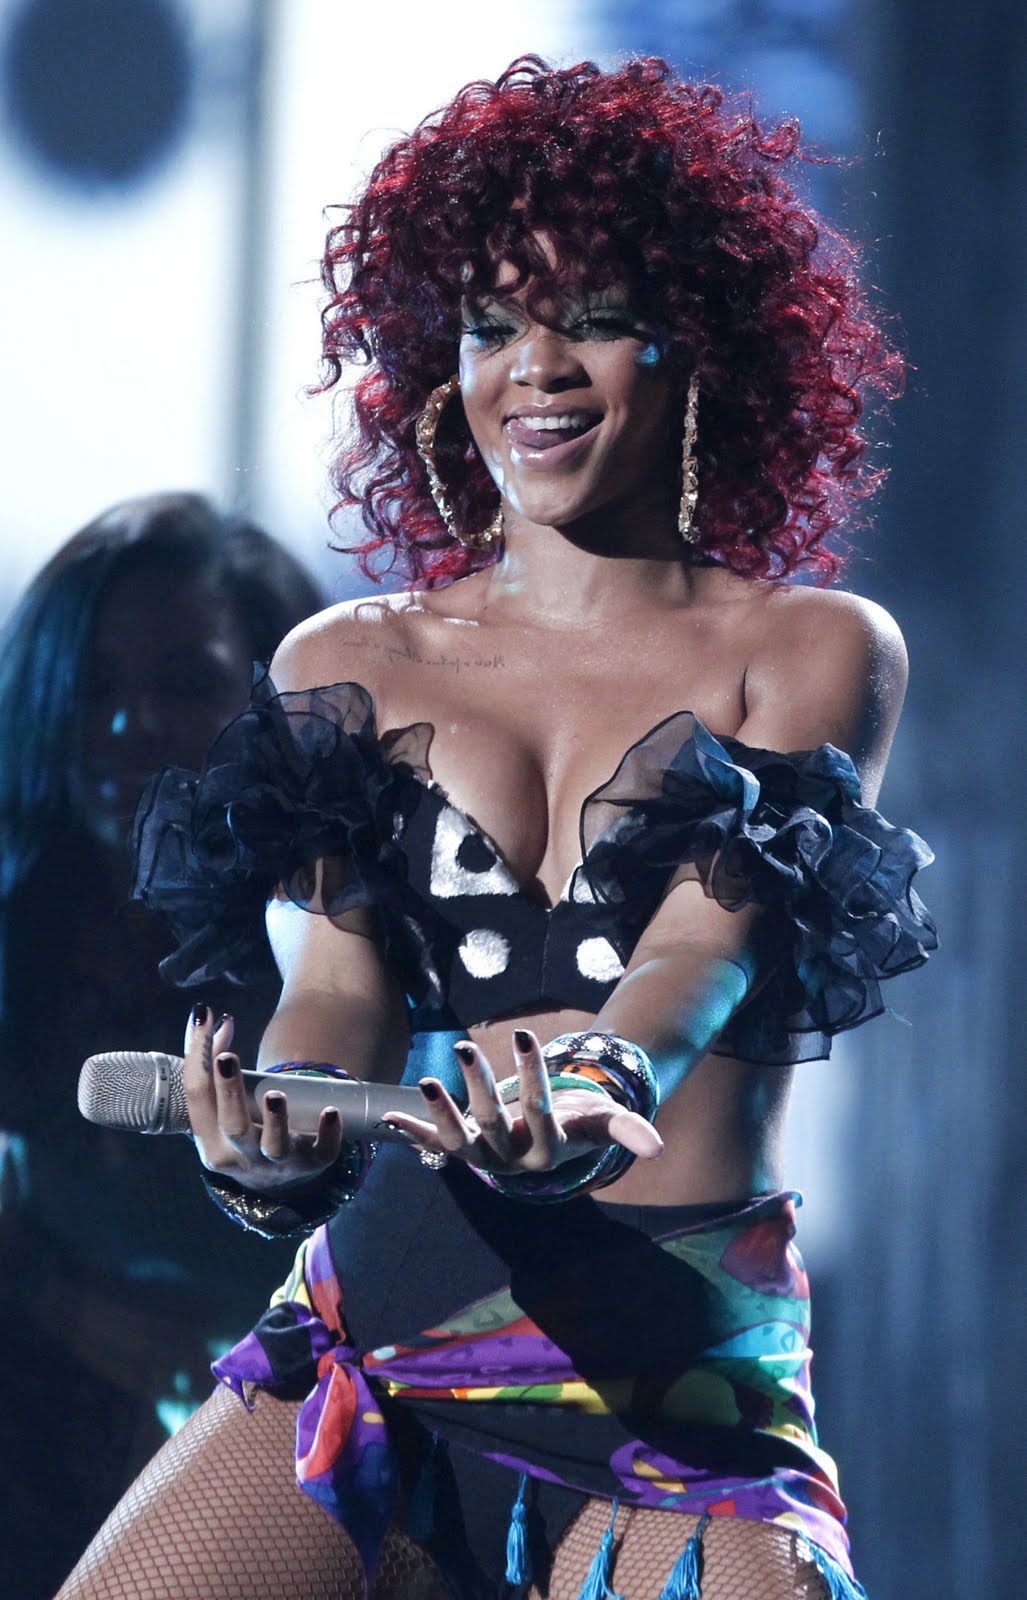 http://4.bp.blogspot.com/_jBpbz96_-9Y/TOsEUCimWJI/AAAAAAAAYxk/wpRqIBclv2g/s1600/Rihanna%2BAMA%2B3.jpg